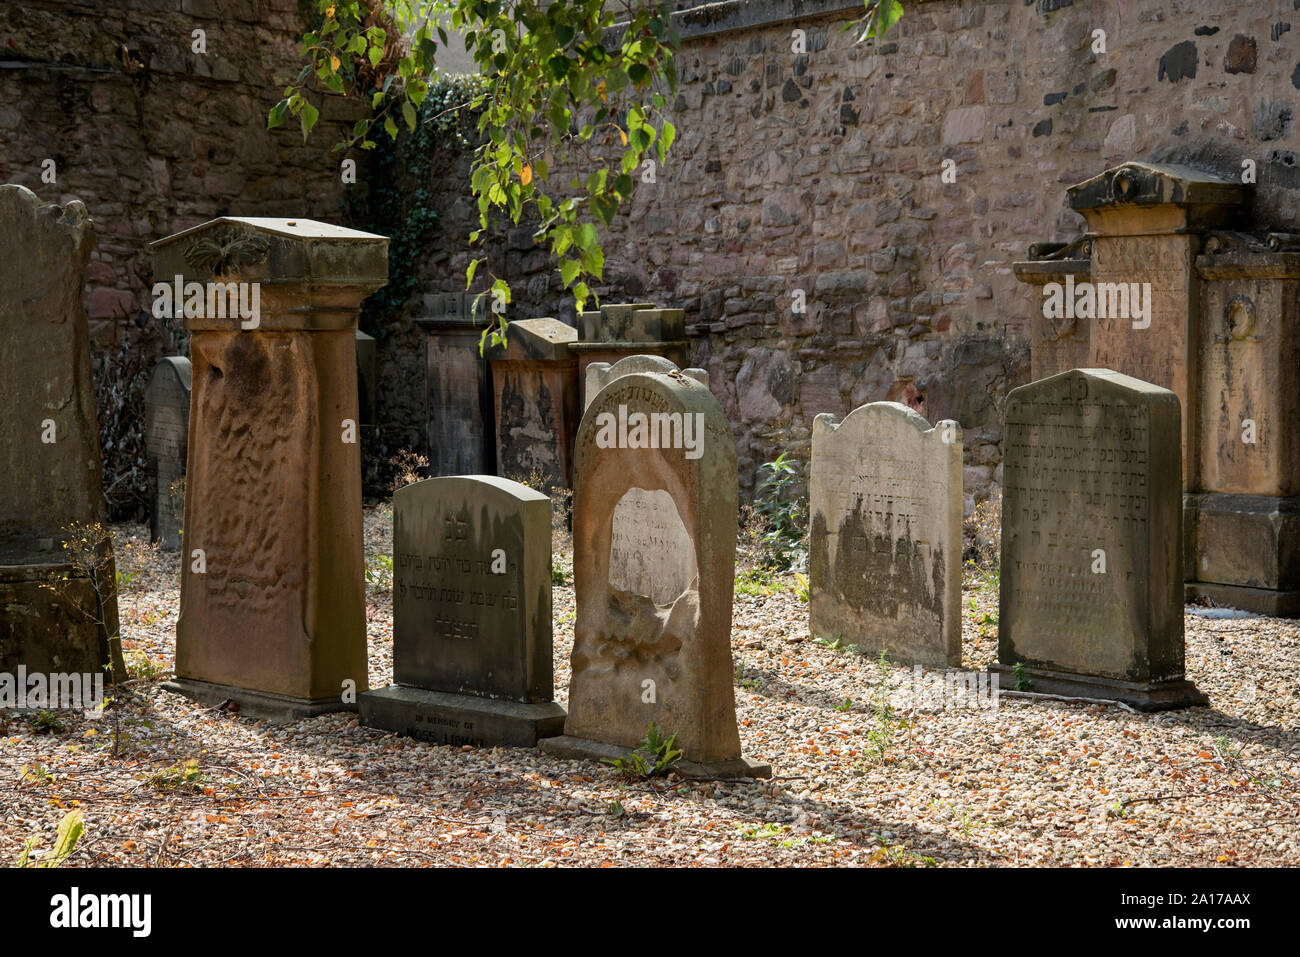 Abgenutzte und verwitterte jüdische Grabsteine auf was die erste jüdische Burial Ground in Schottland war, eröffnet im Jahre 1816. Stockfoto